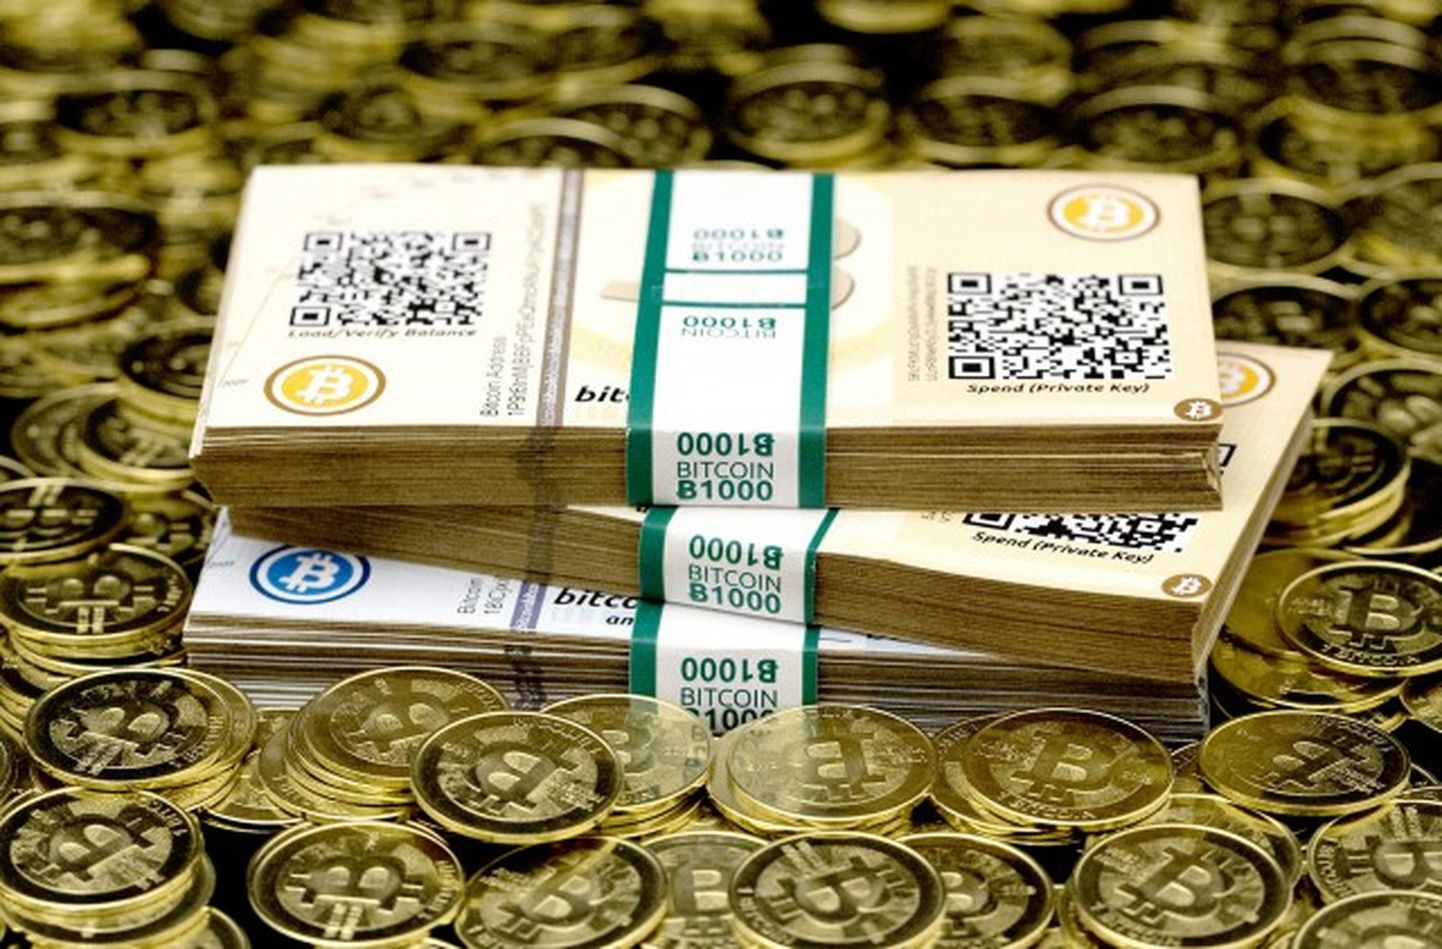 Виртуальная валюта Bitcoin